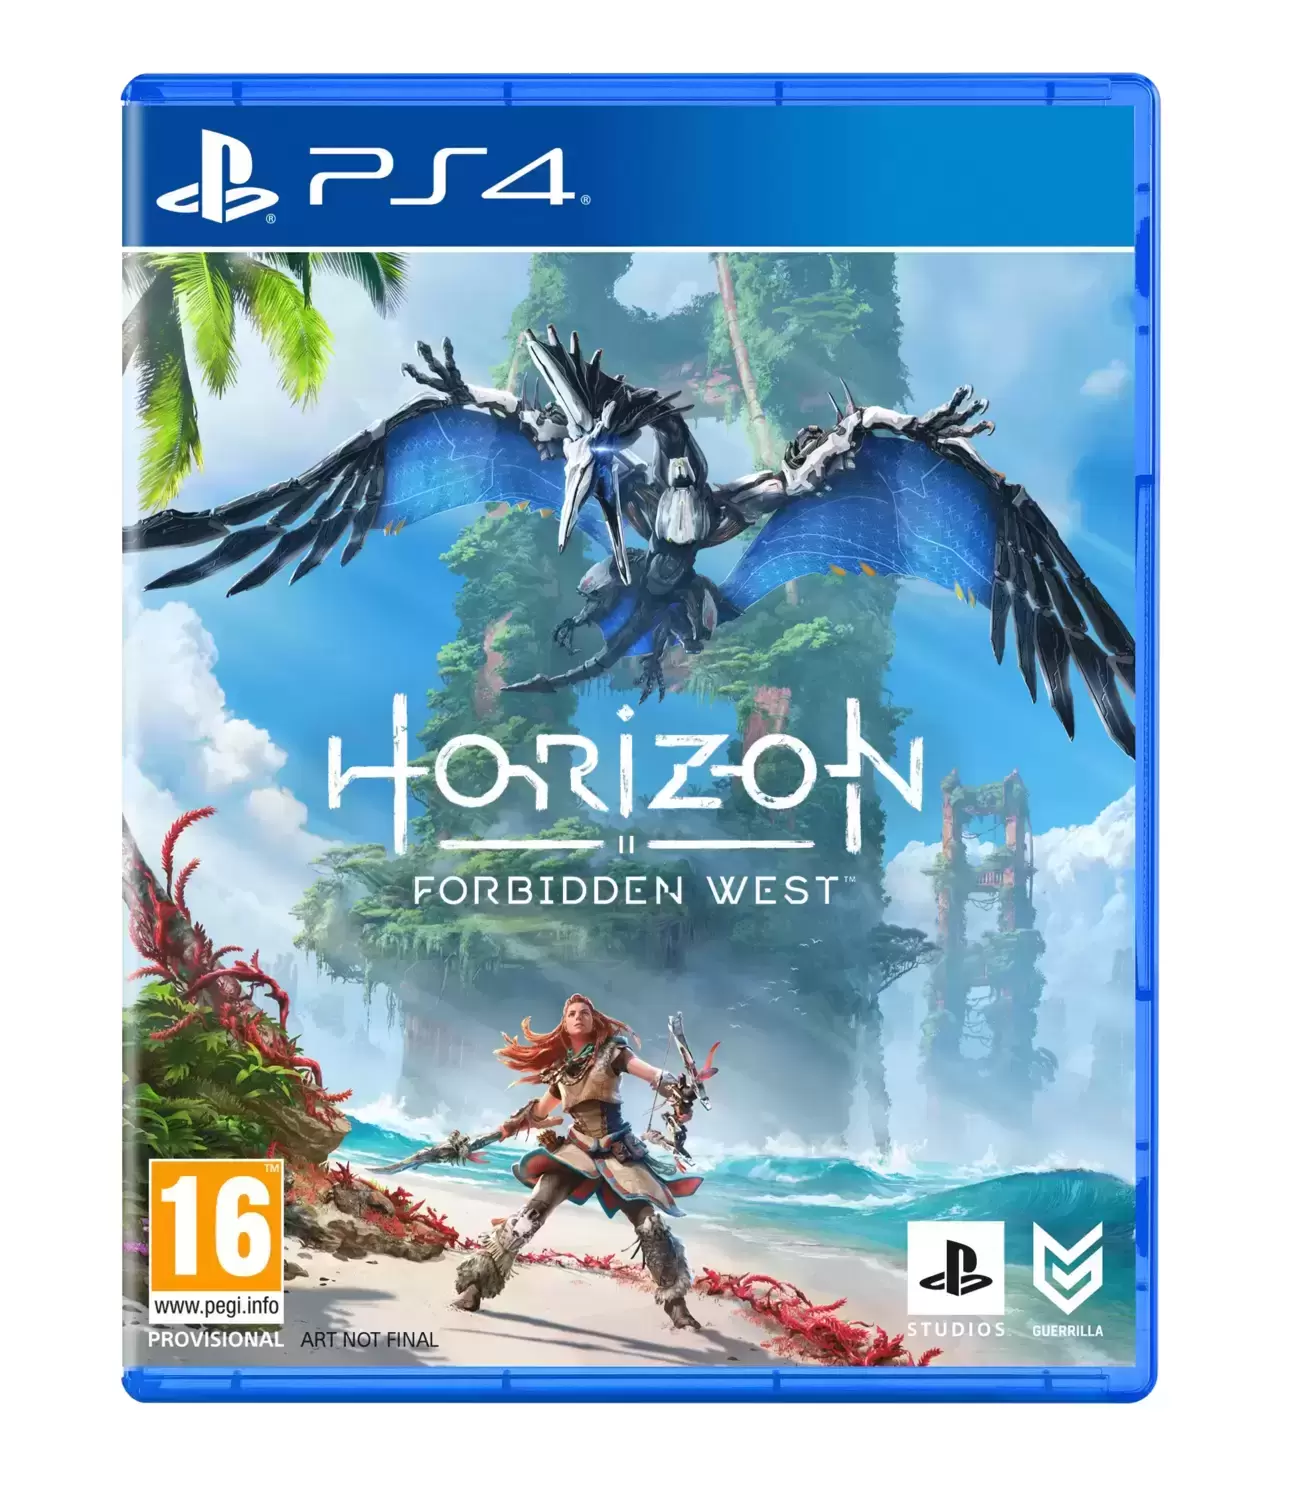 PS4 Games - Horizon Forbidden West